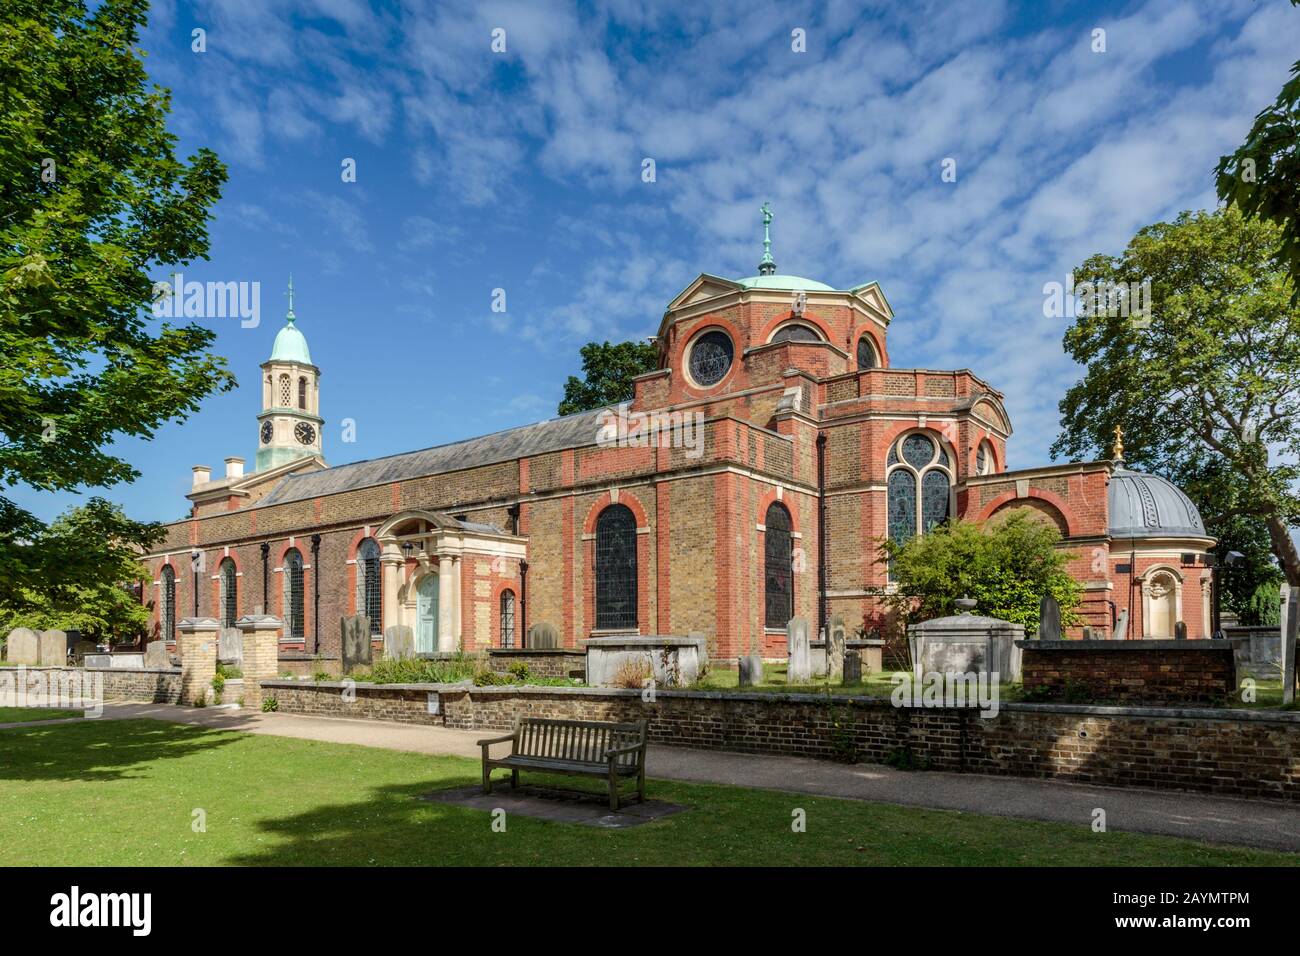 Die St Anne's Church ist eine Pfarrkirche in Kew im London Borough of Richmond upon Thames, West London. Stockfoto